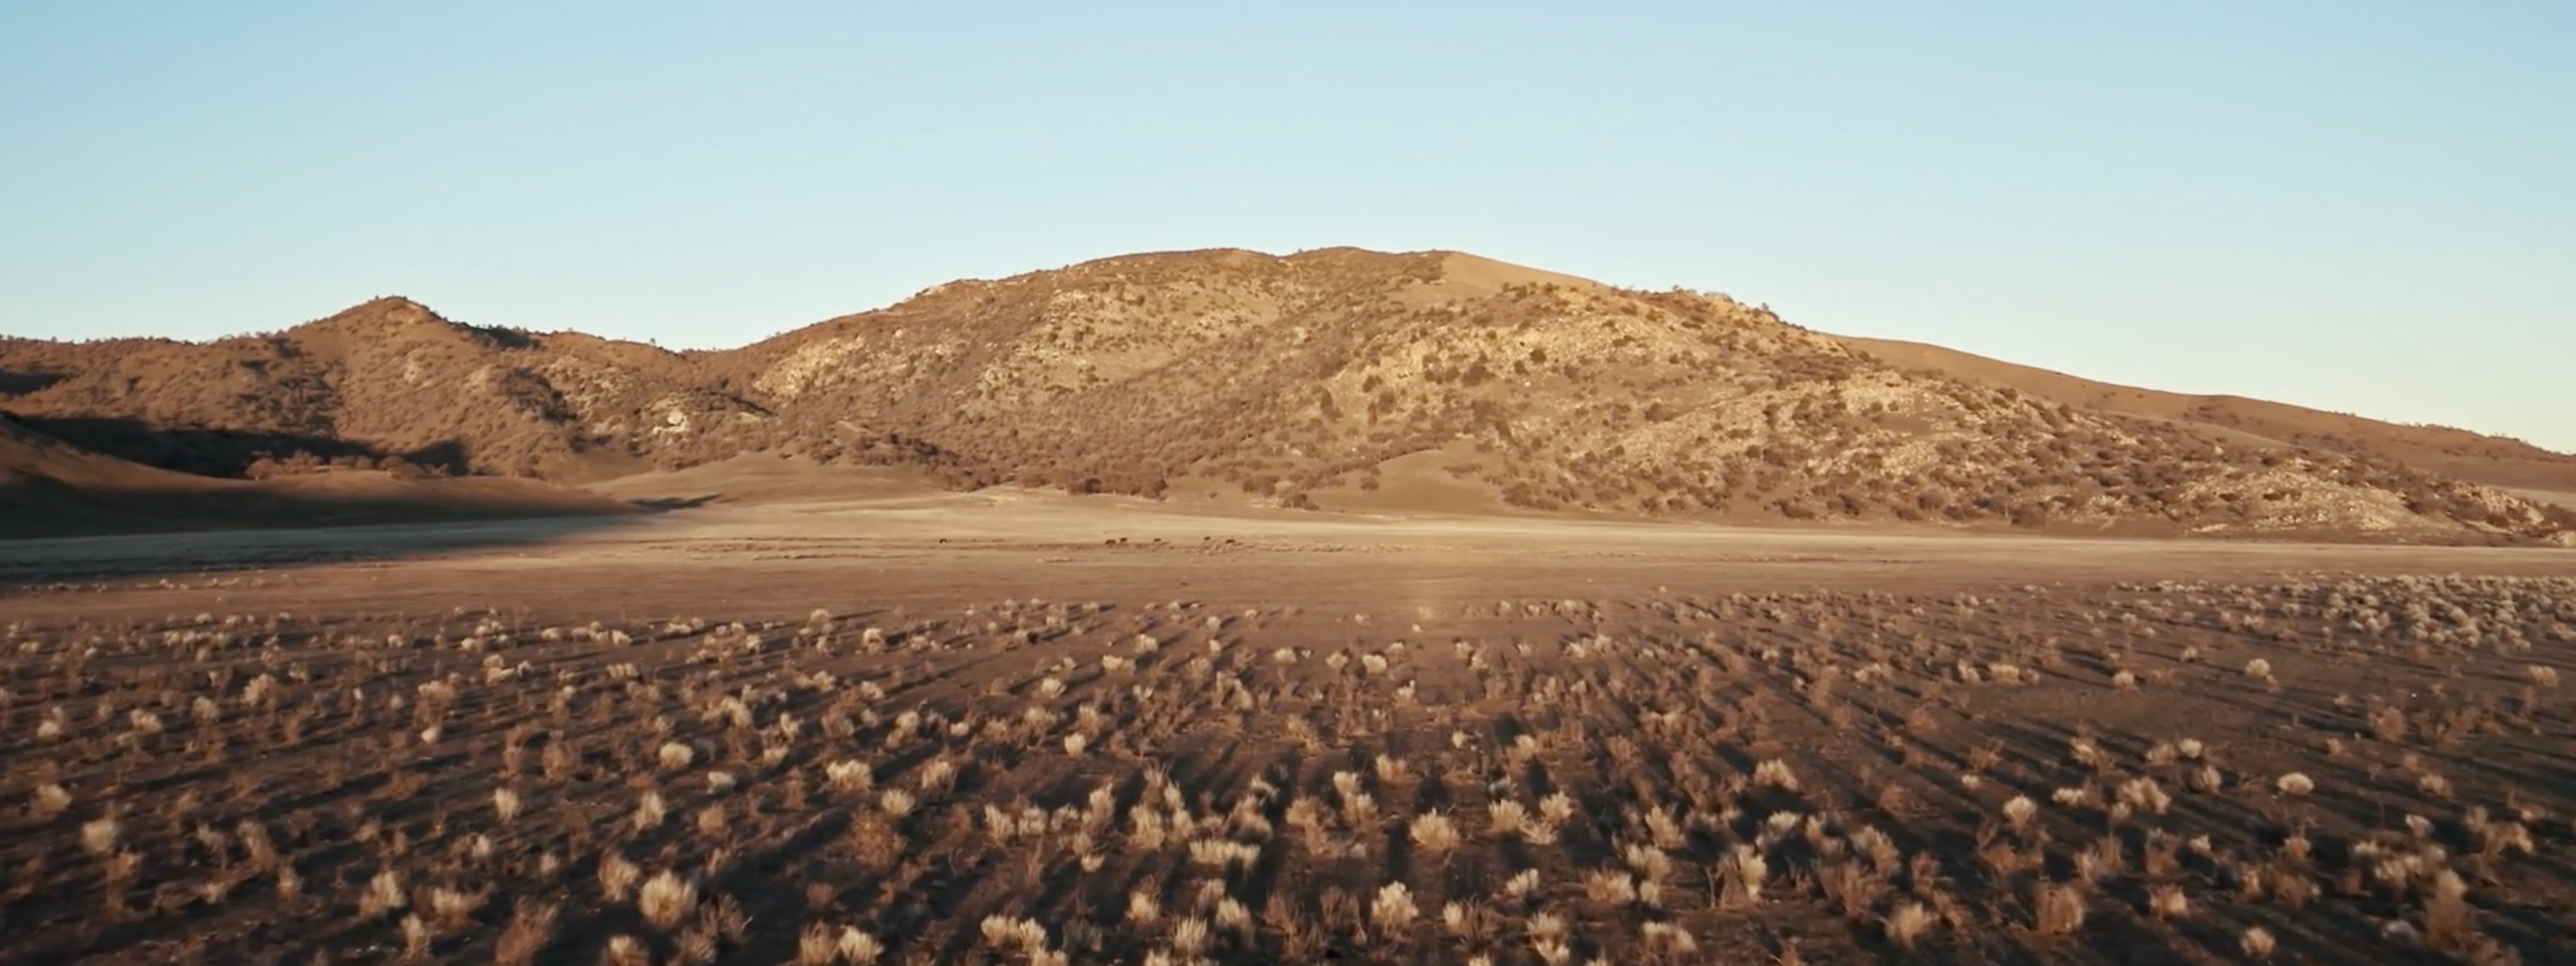 <a href="https://www.capgemini.com/news/inside-stories/mojave-desert/">The Mojave Desert: Data for tortoises and tires</a>